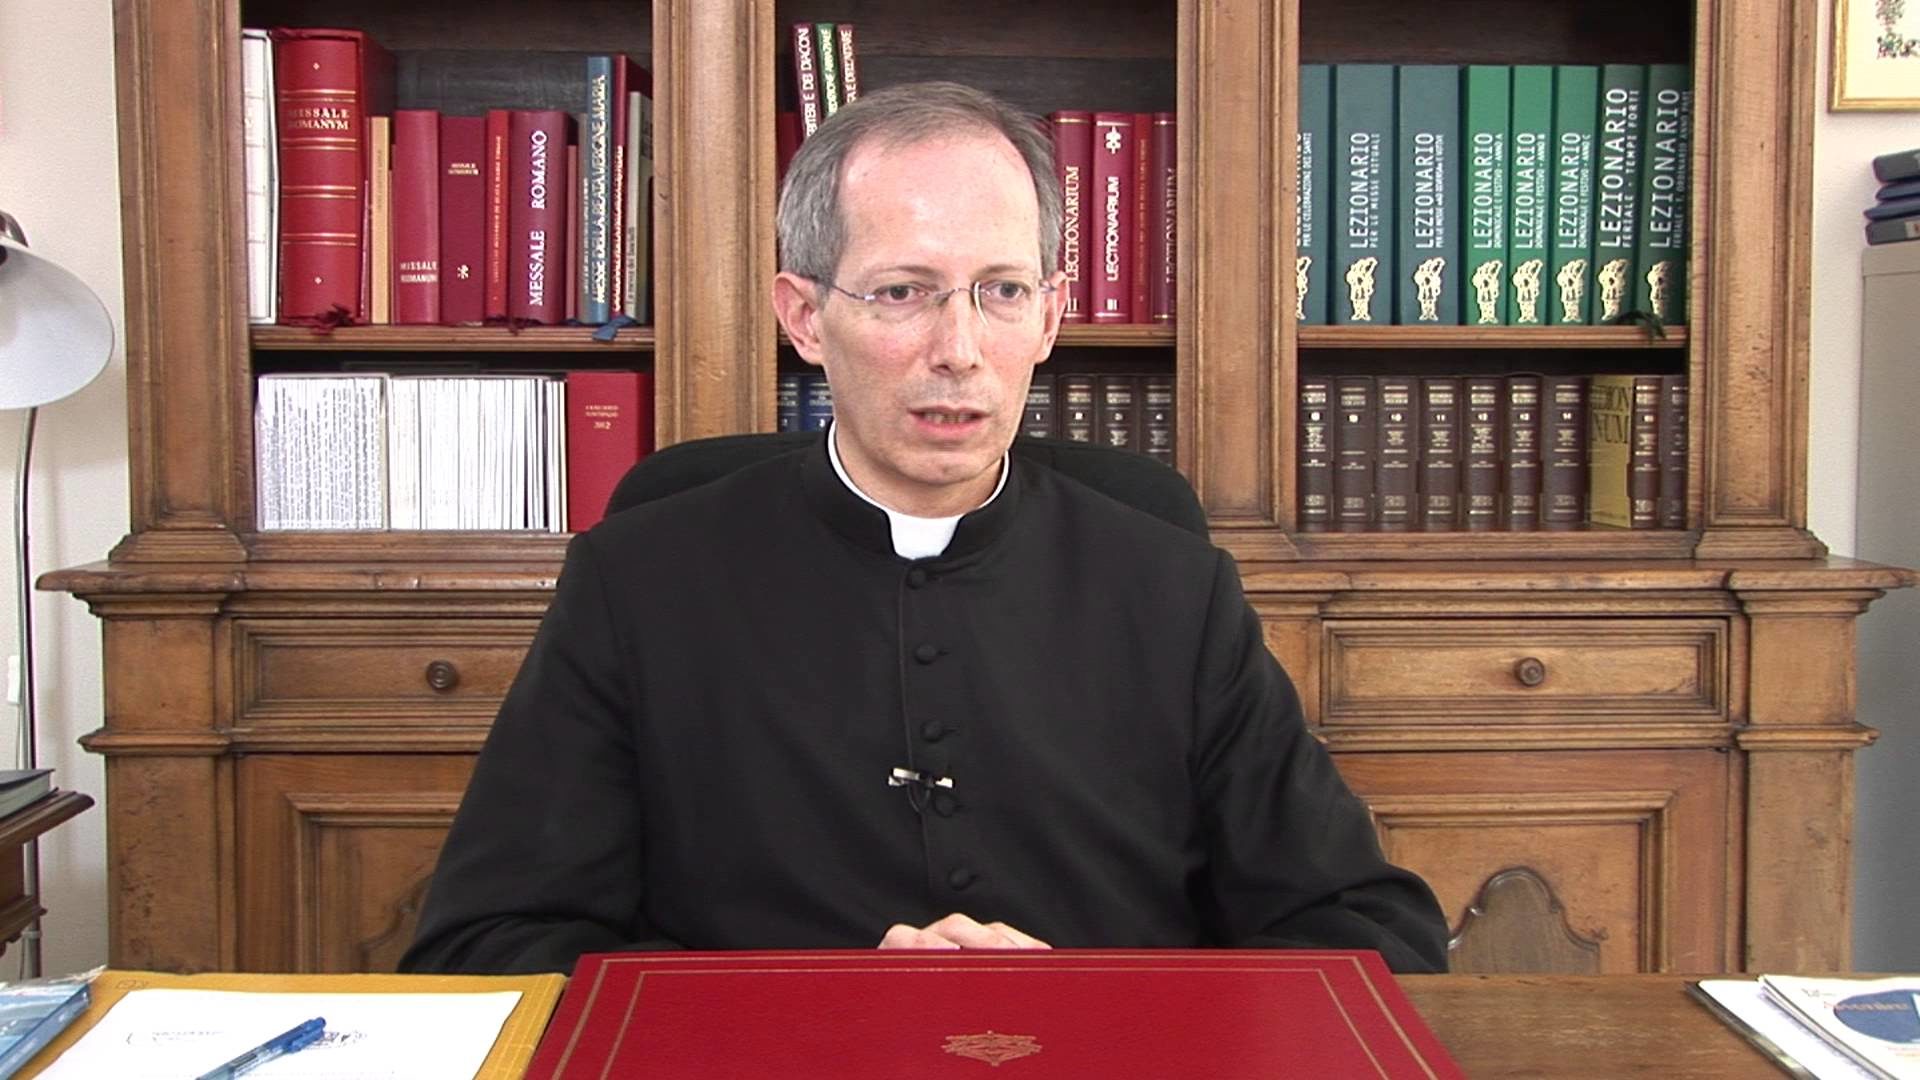 Mgr Guido Marini est renouvelé pour 5 ans dans sa fonction de maître des cérémonies pontificales. | Capture-écran